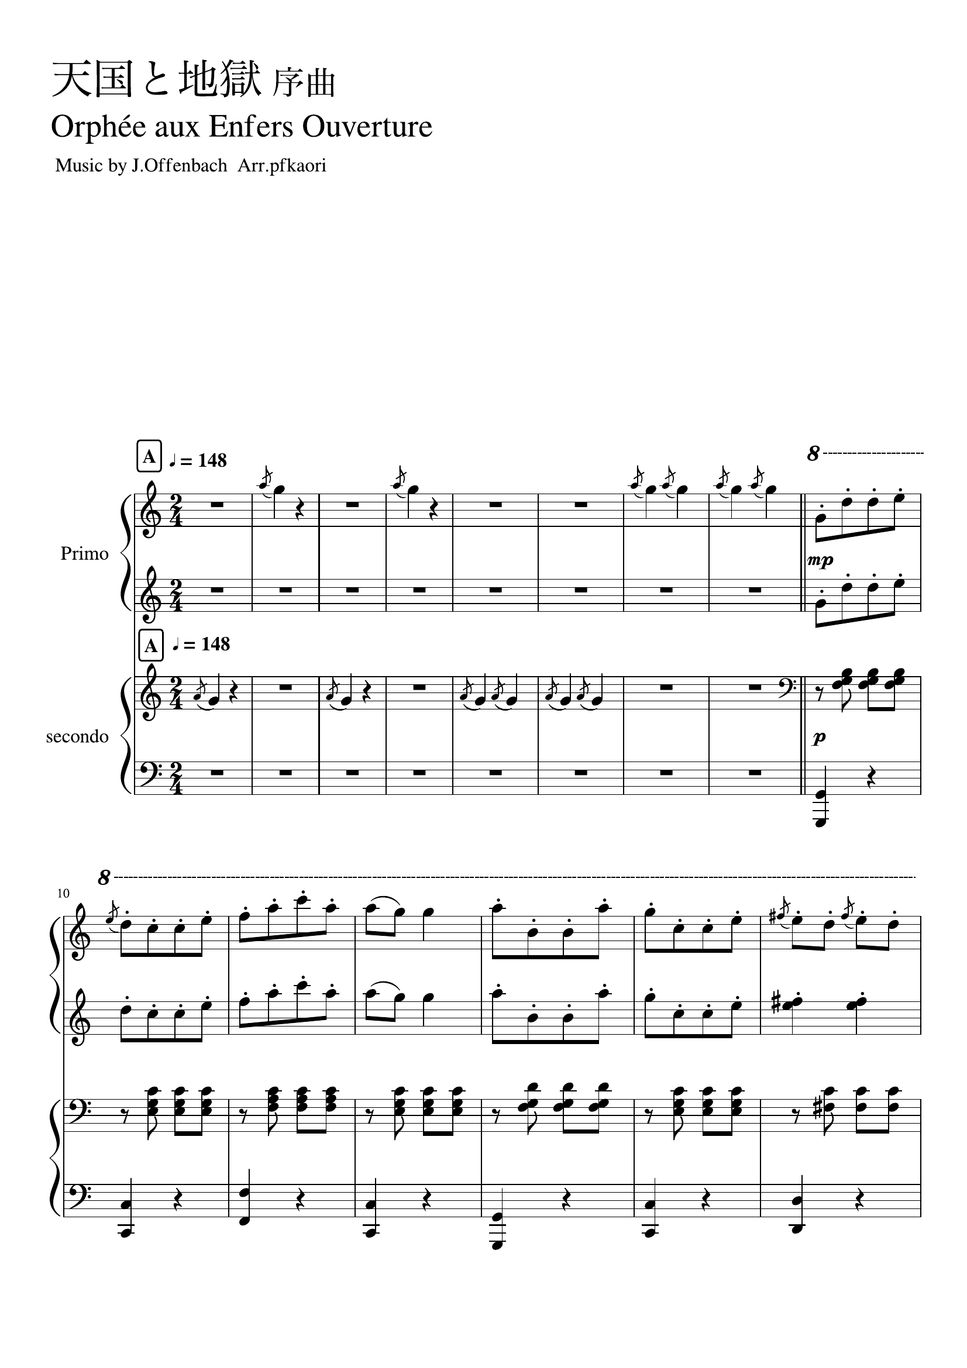 オッフェンバック - 天国と地獄より「序曲」 (Cdur・ピアノ連弾上級) by pfkaori